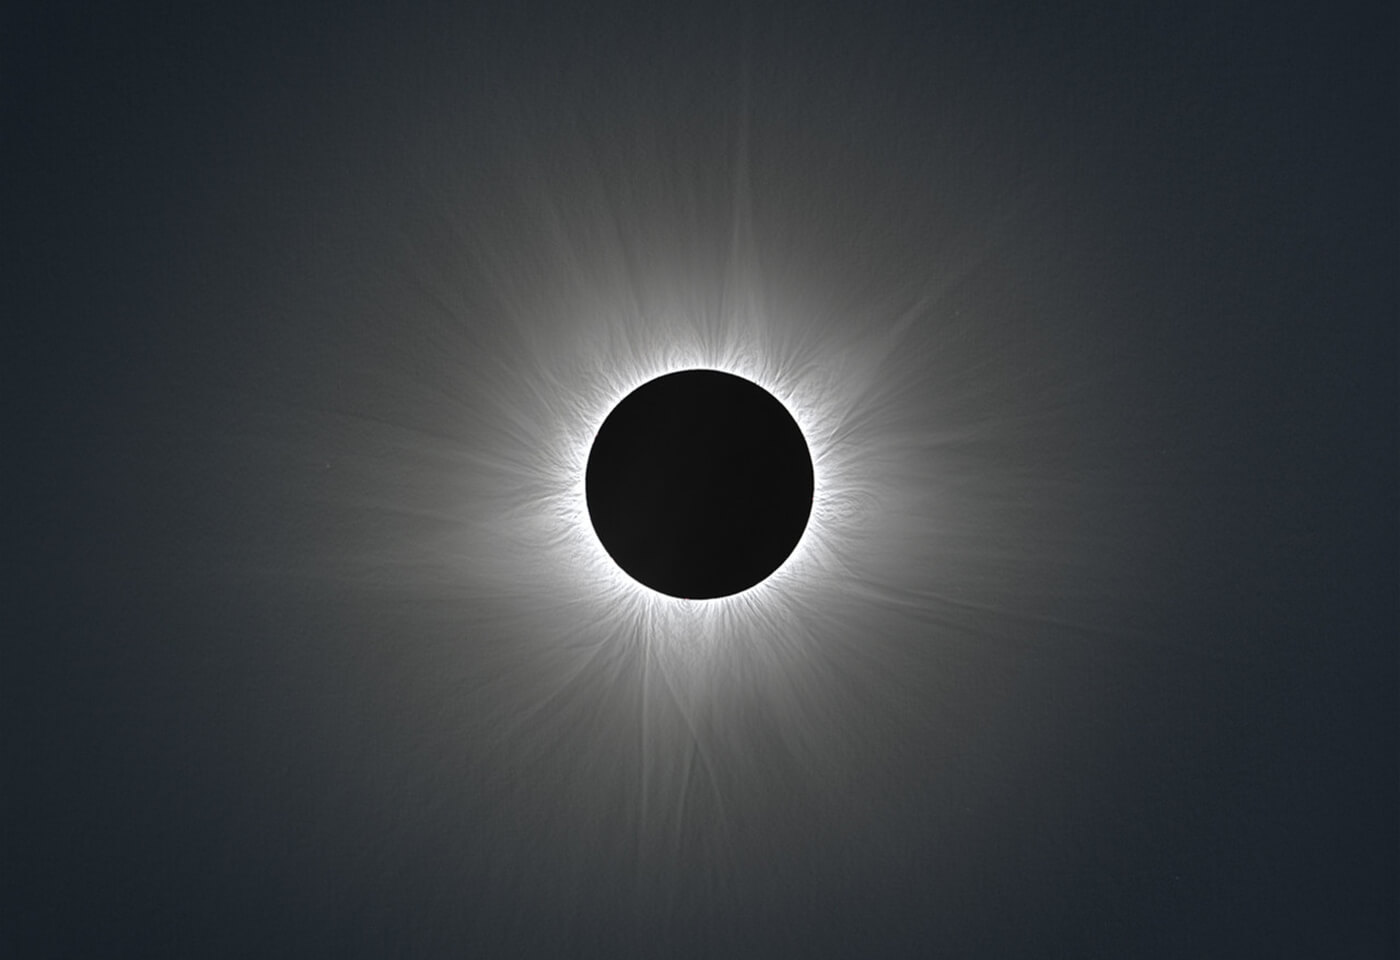 Solar Corona image by Phil Hart